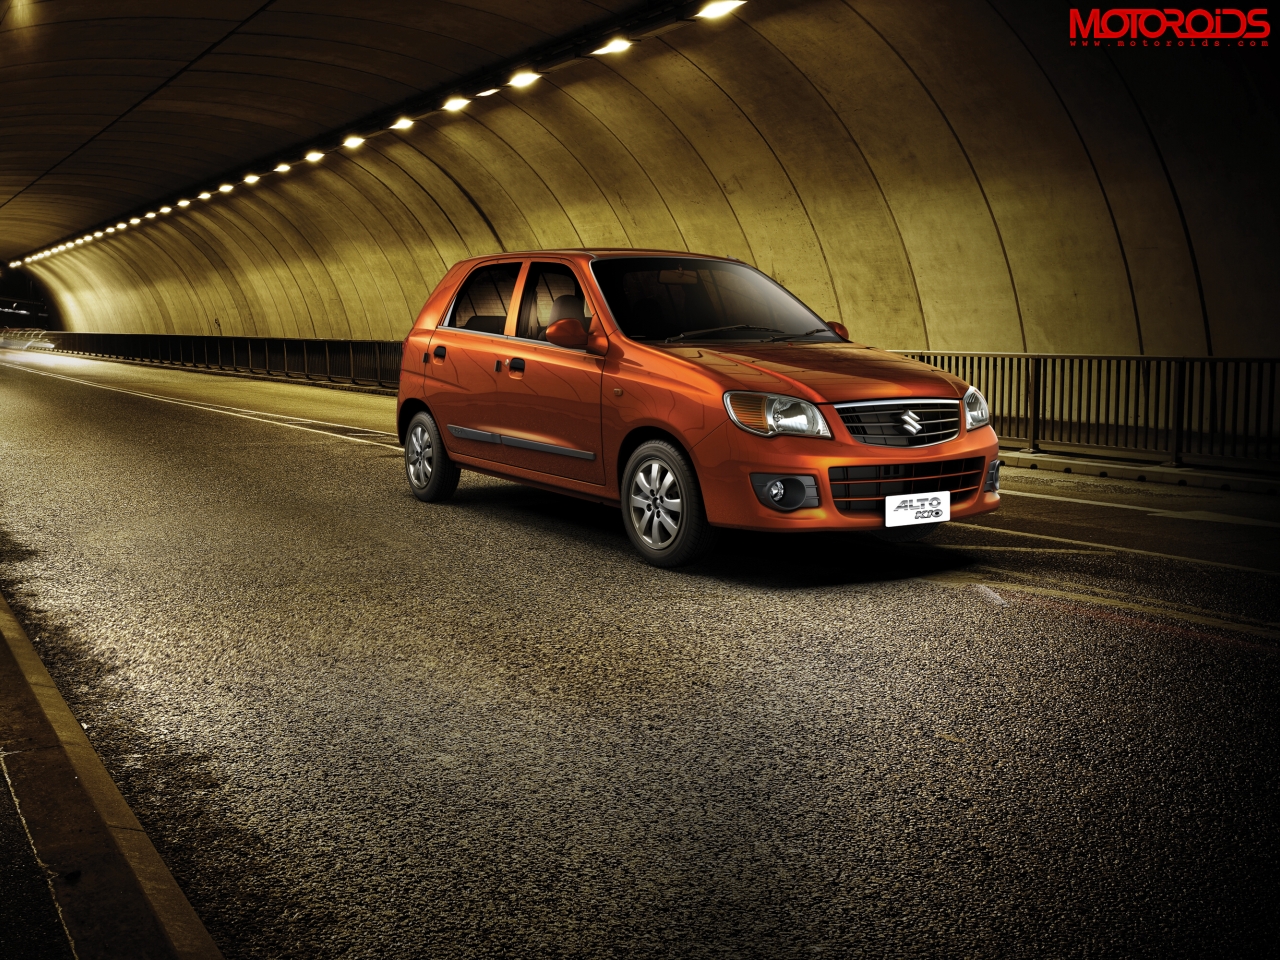 2011 Maruti Suzuki Alto K10 Photos Prices Features Specs All